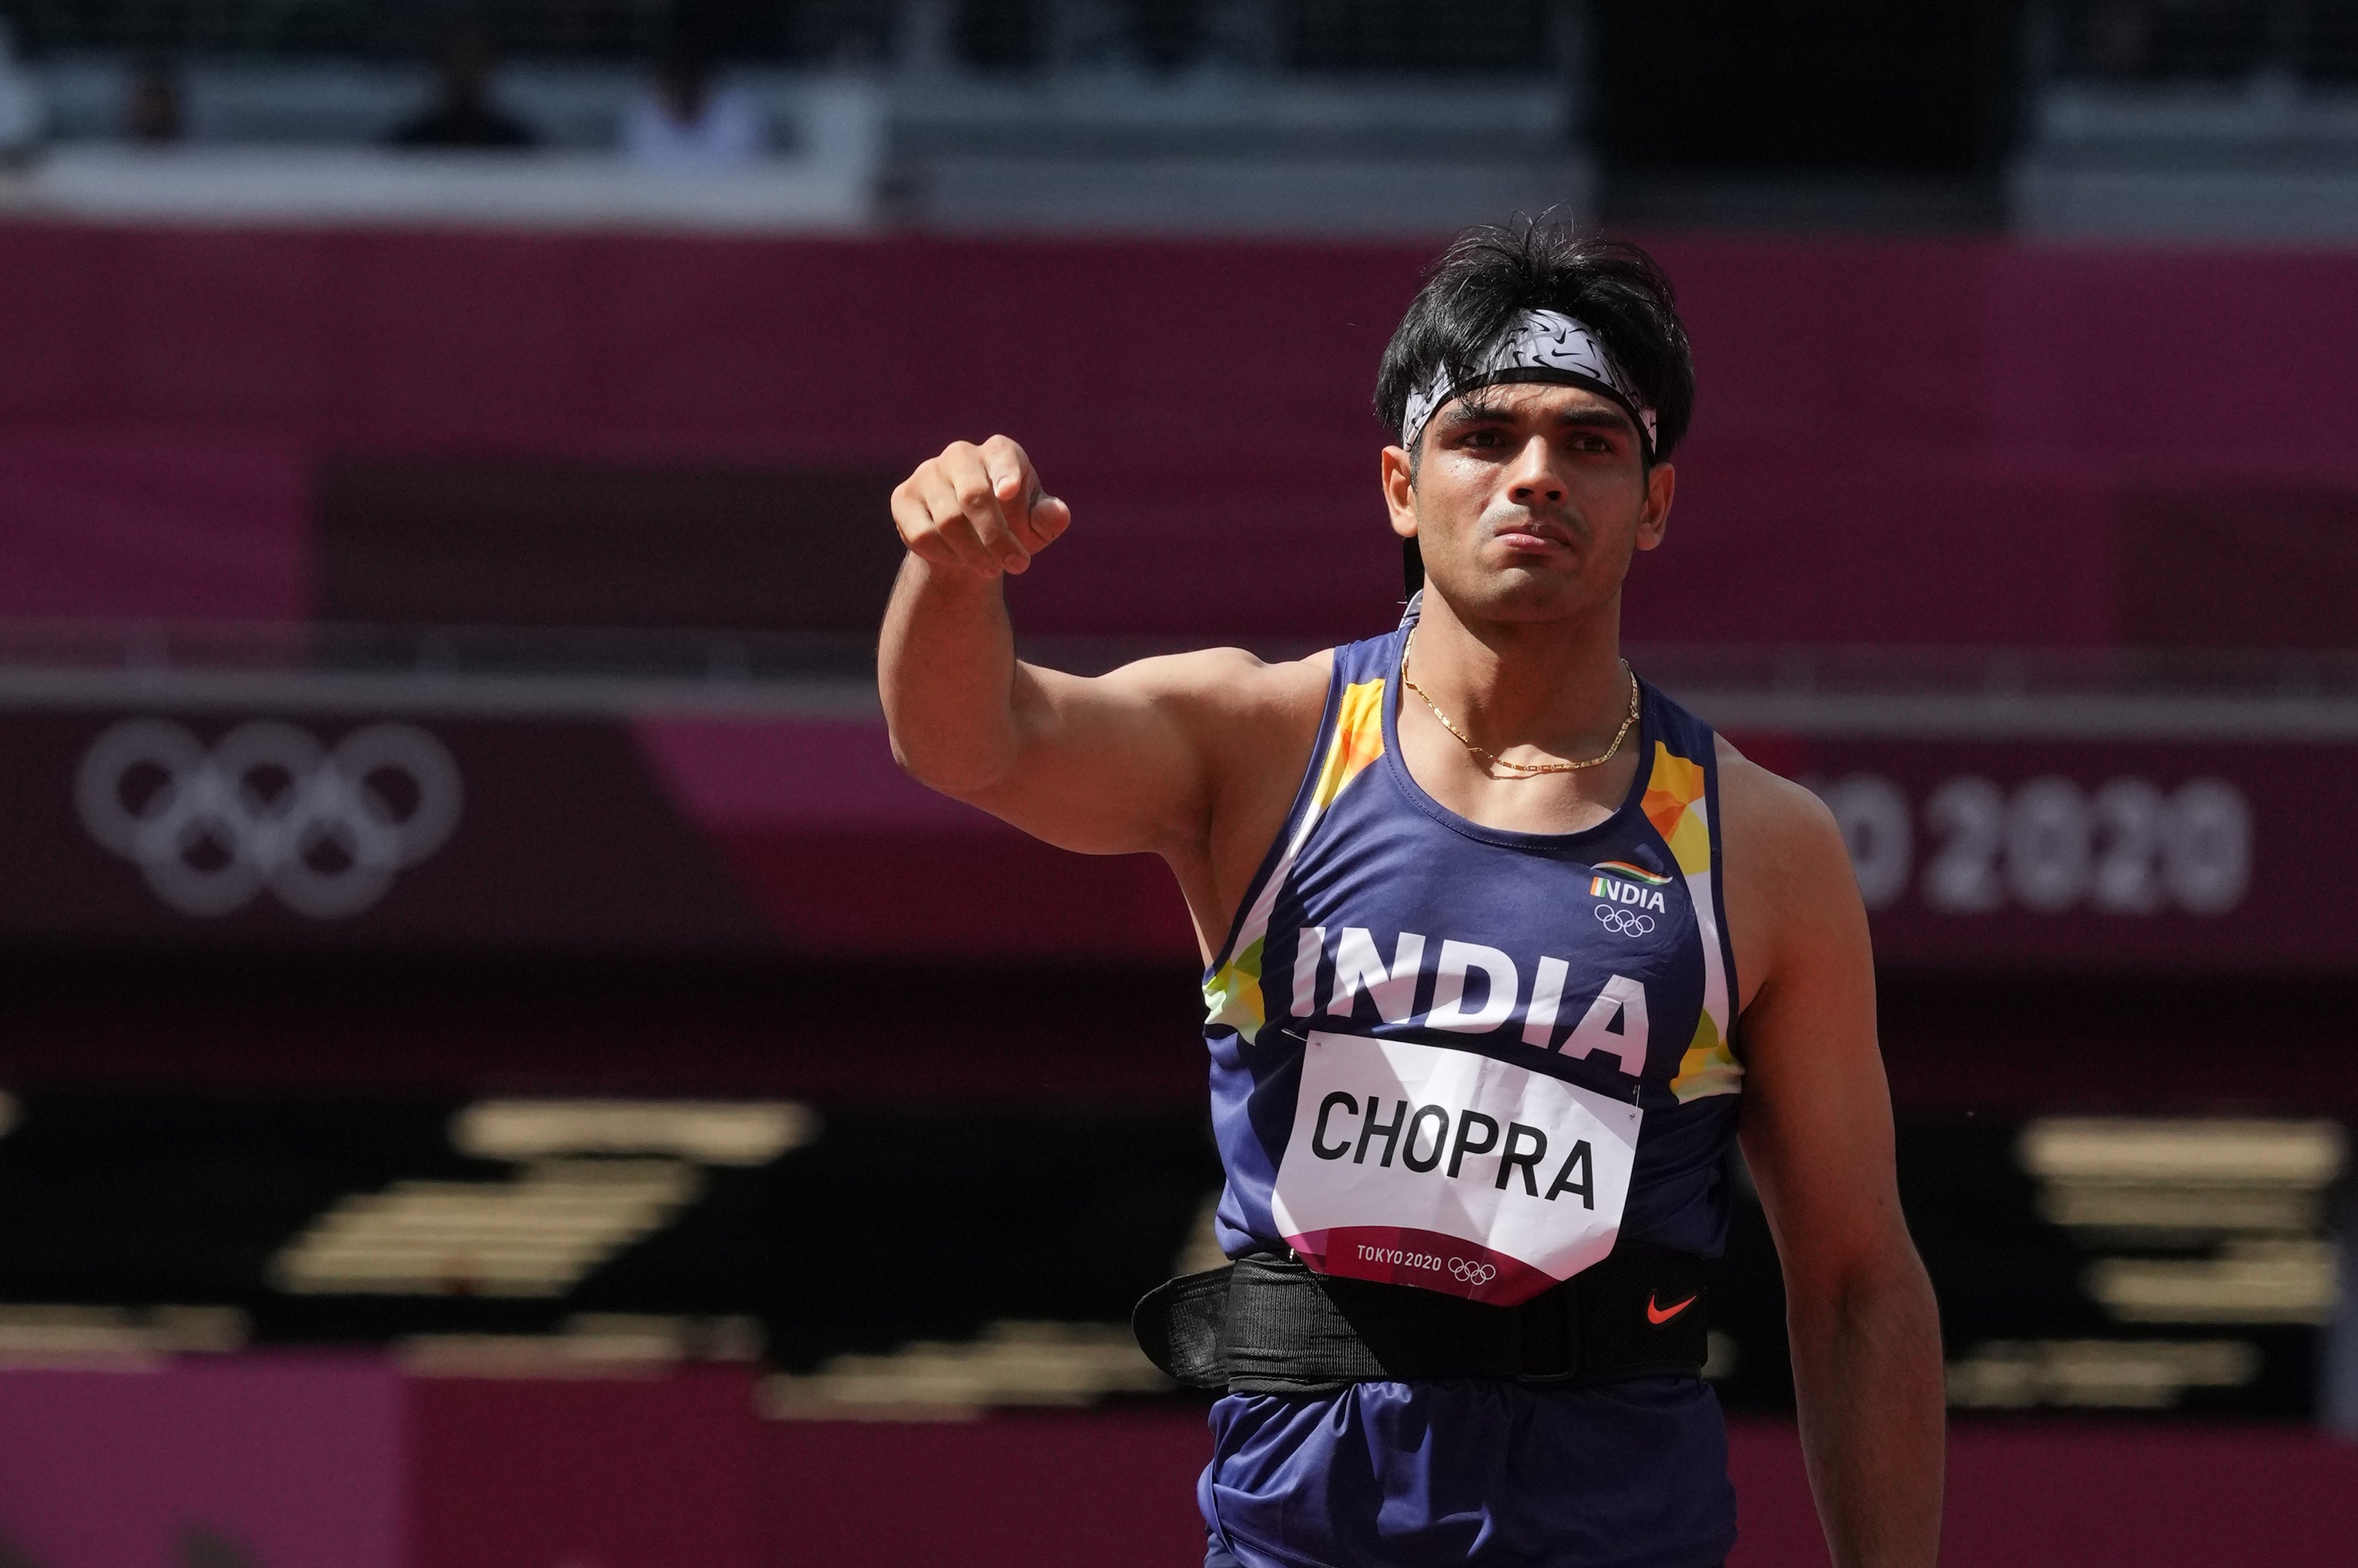 एथलेटिक्स में भारत के ओलंपिक पदक का इंतज़ार ख़त्म करने के लिये निगाहें नीरज पर